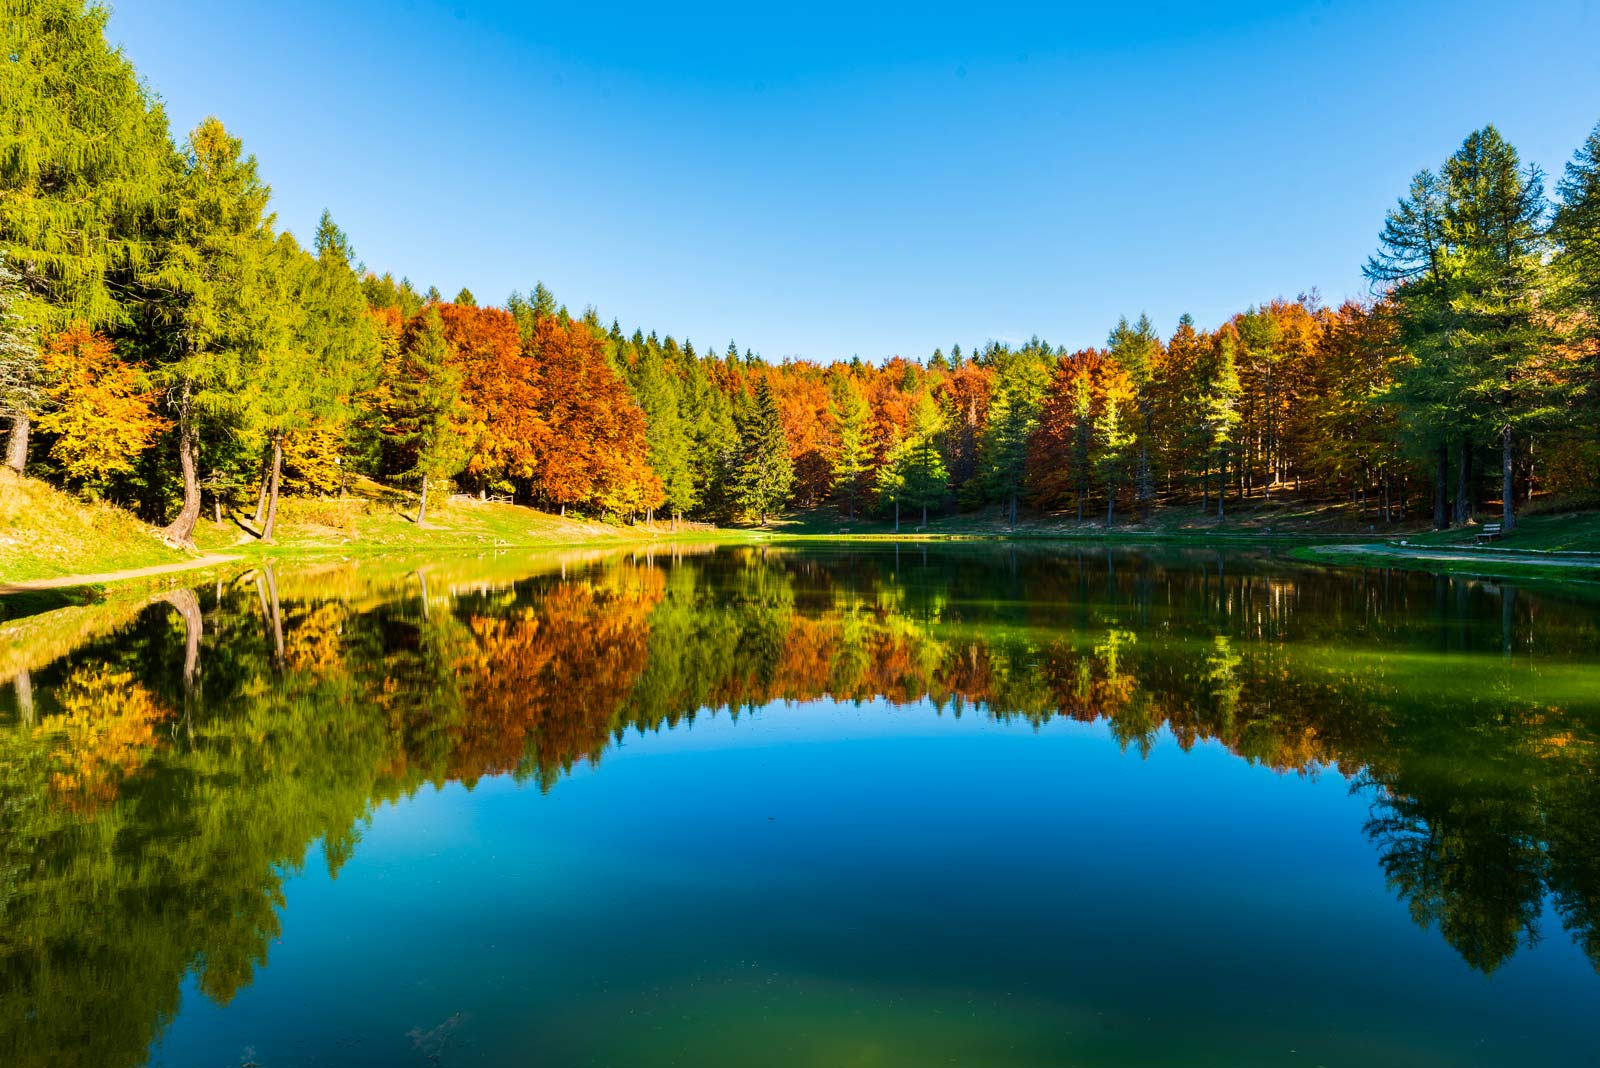 Lago della ninfa sestola autunno